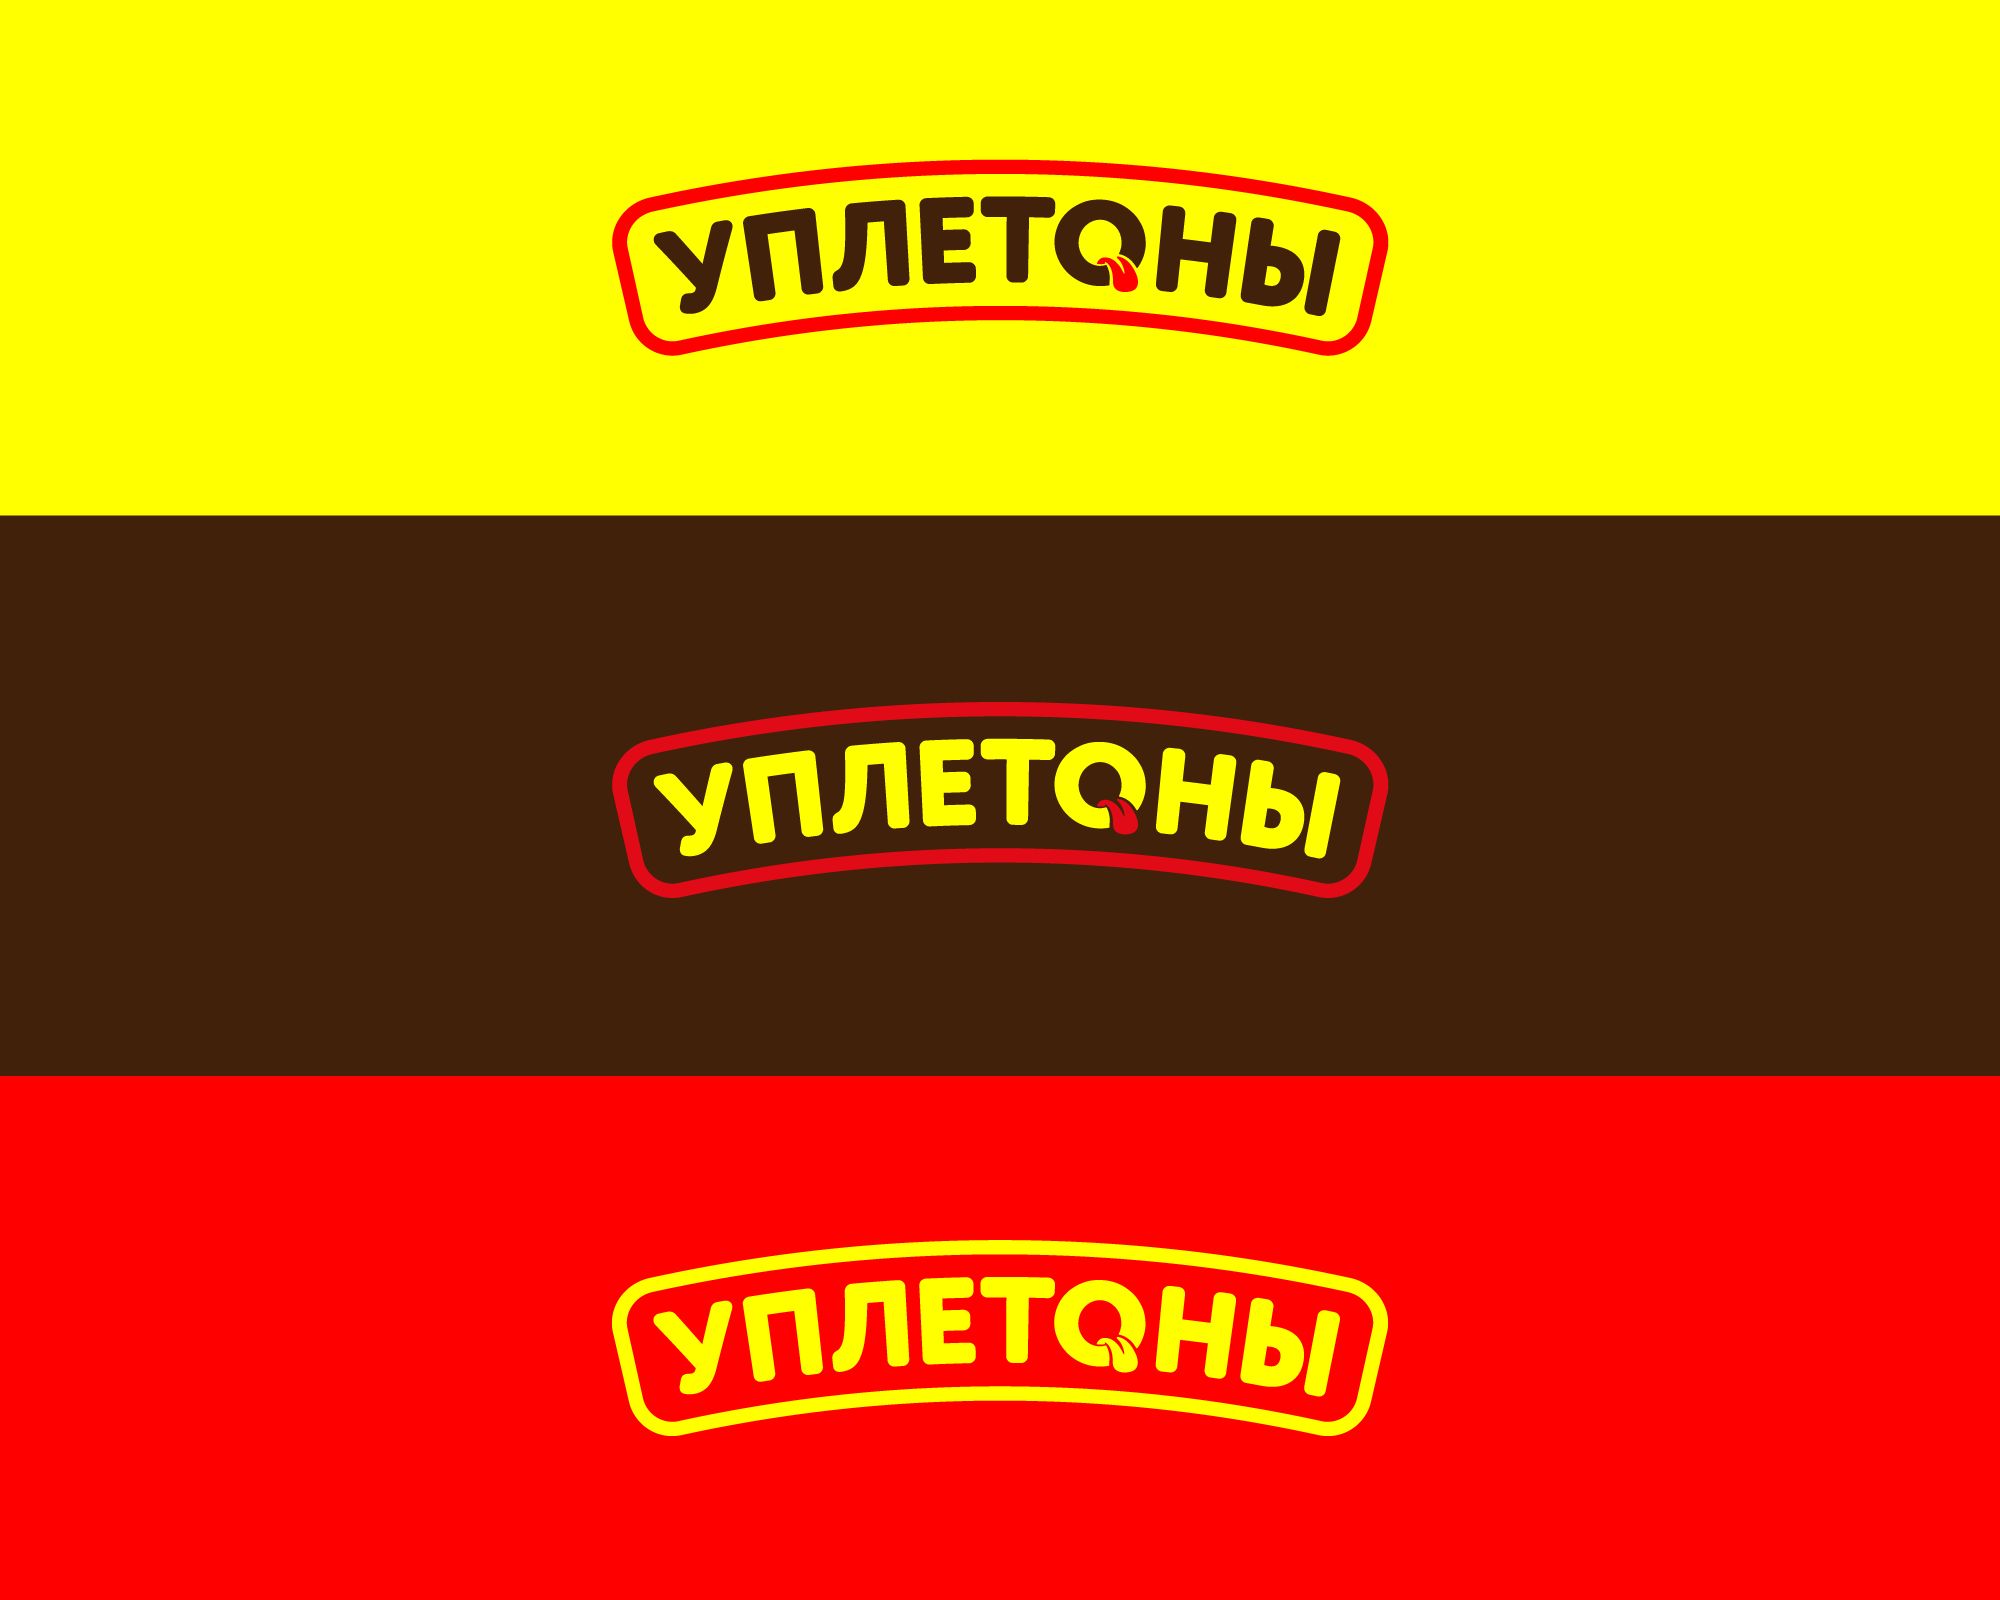 Логотип для Уплетоны - дизайнер farhaDesigner